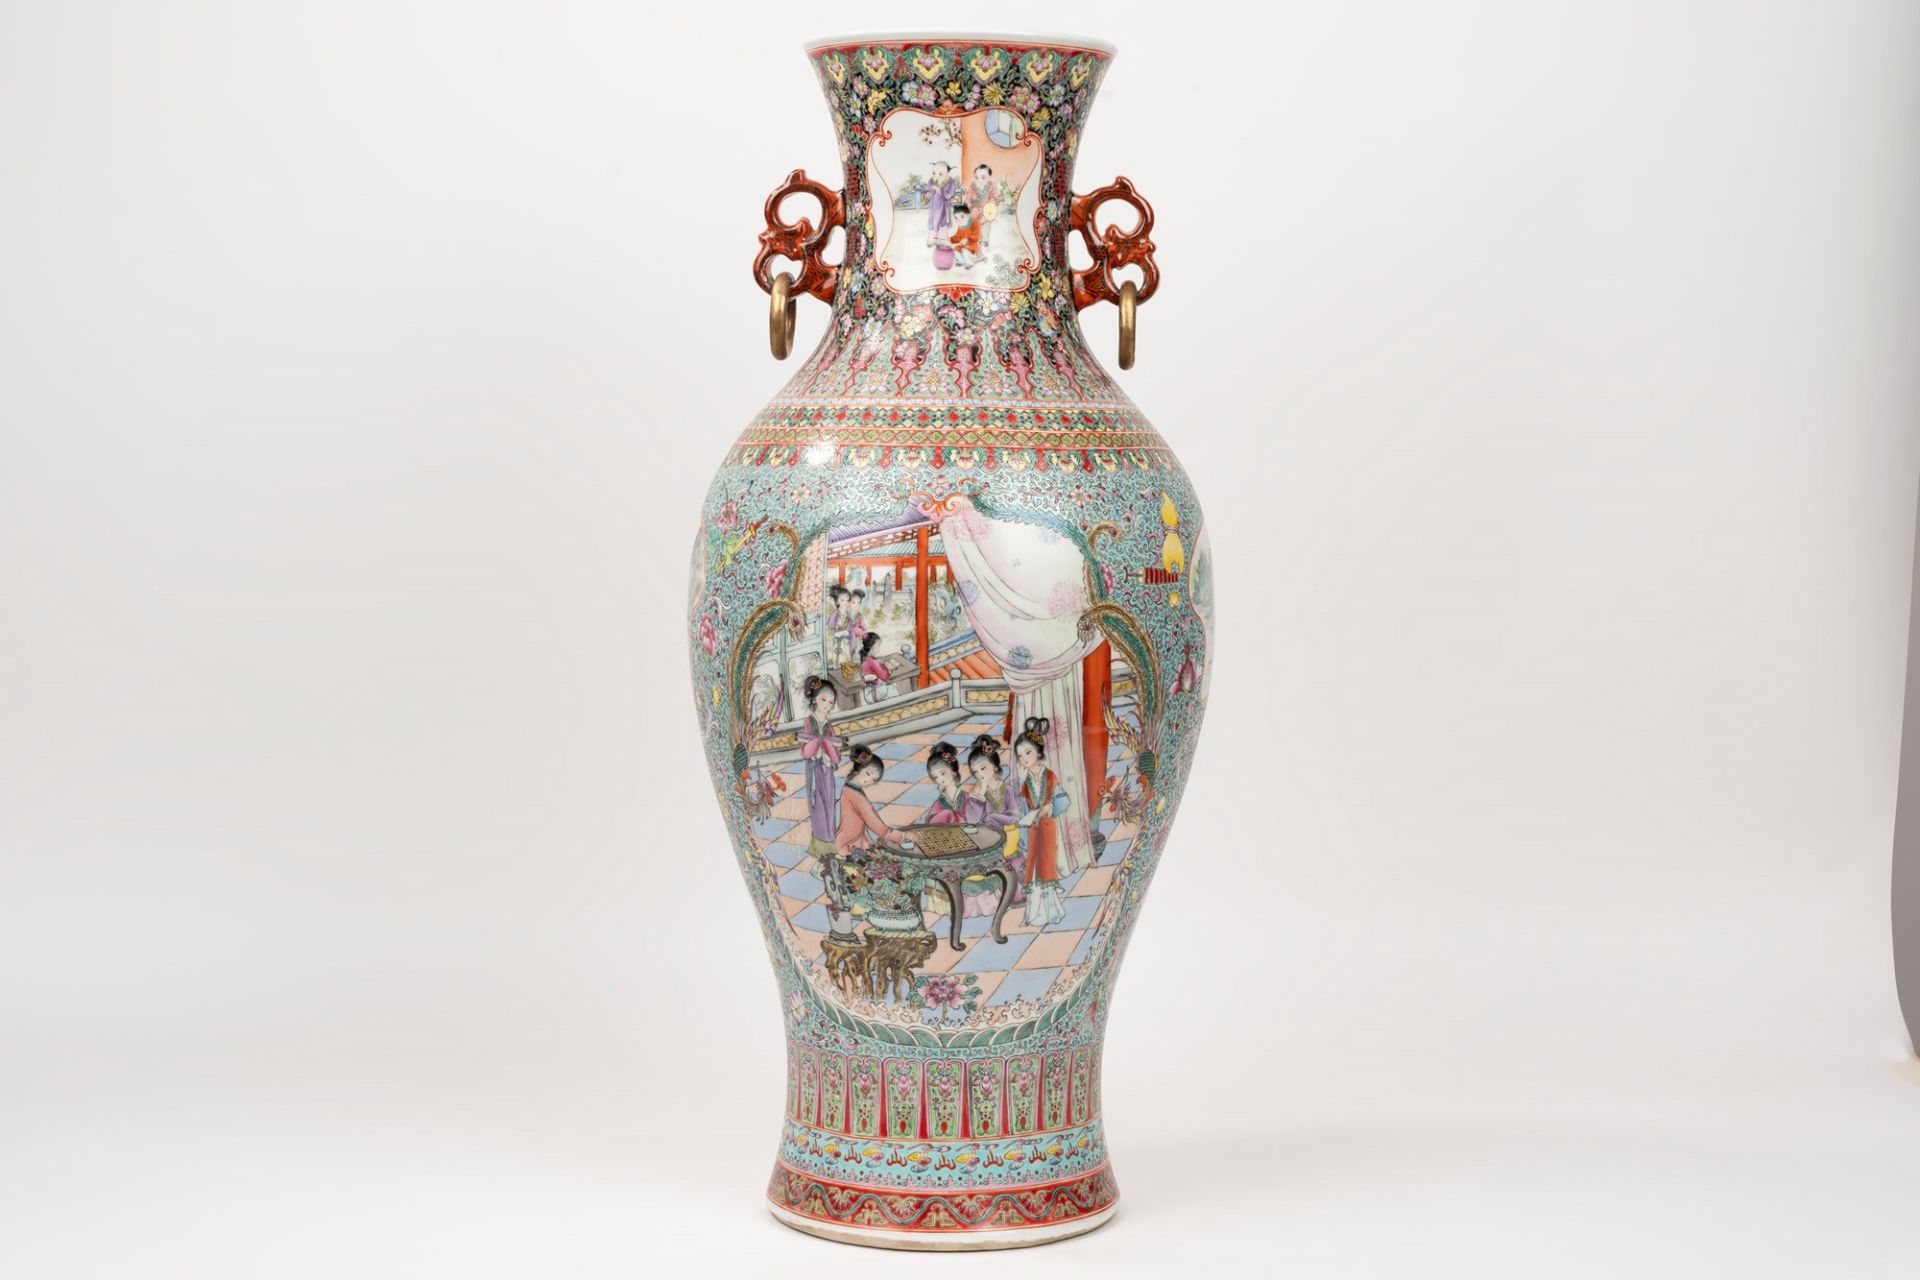 Polychrome porcelain vase, China, 20th century - Image 2 of 6